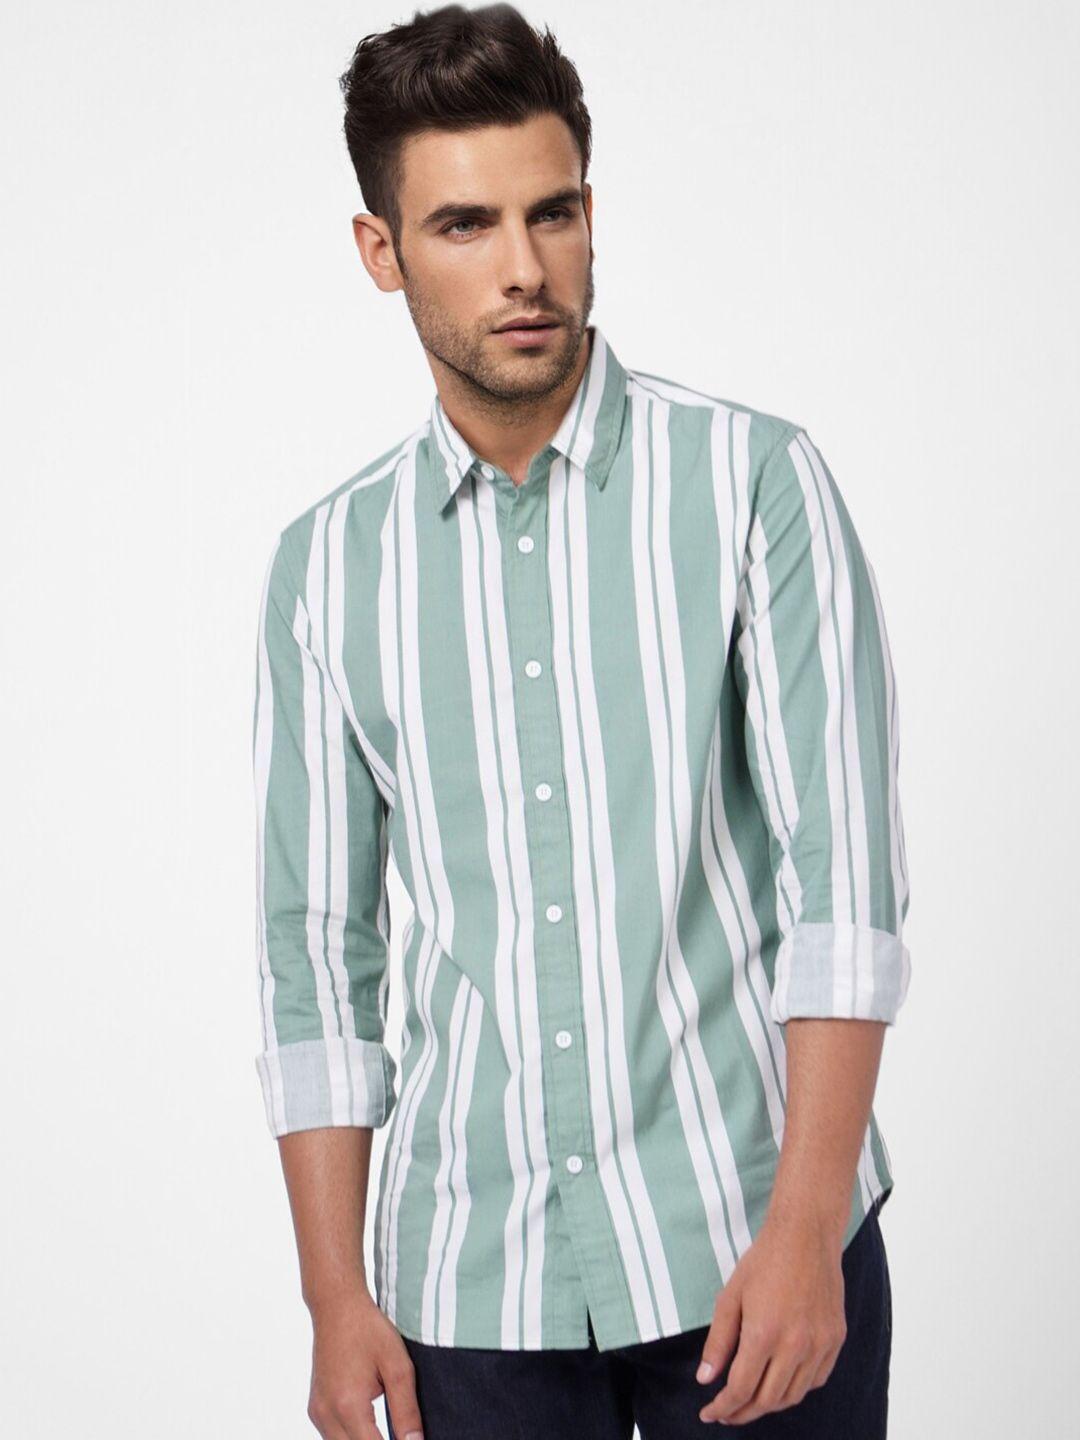 jack & jones men vertical stripes casual cotton shirt